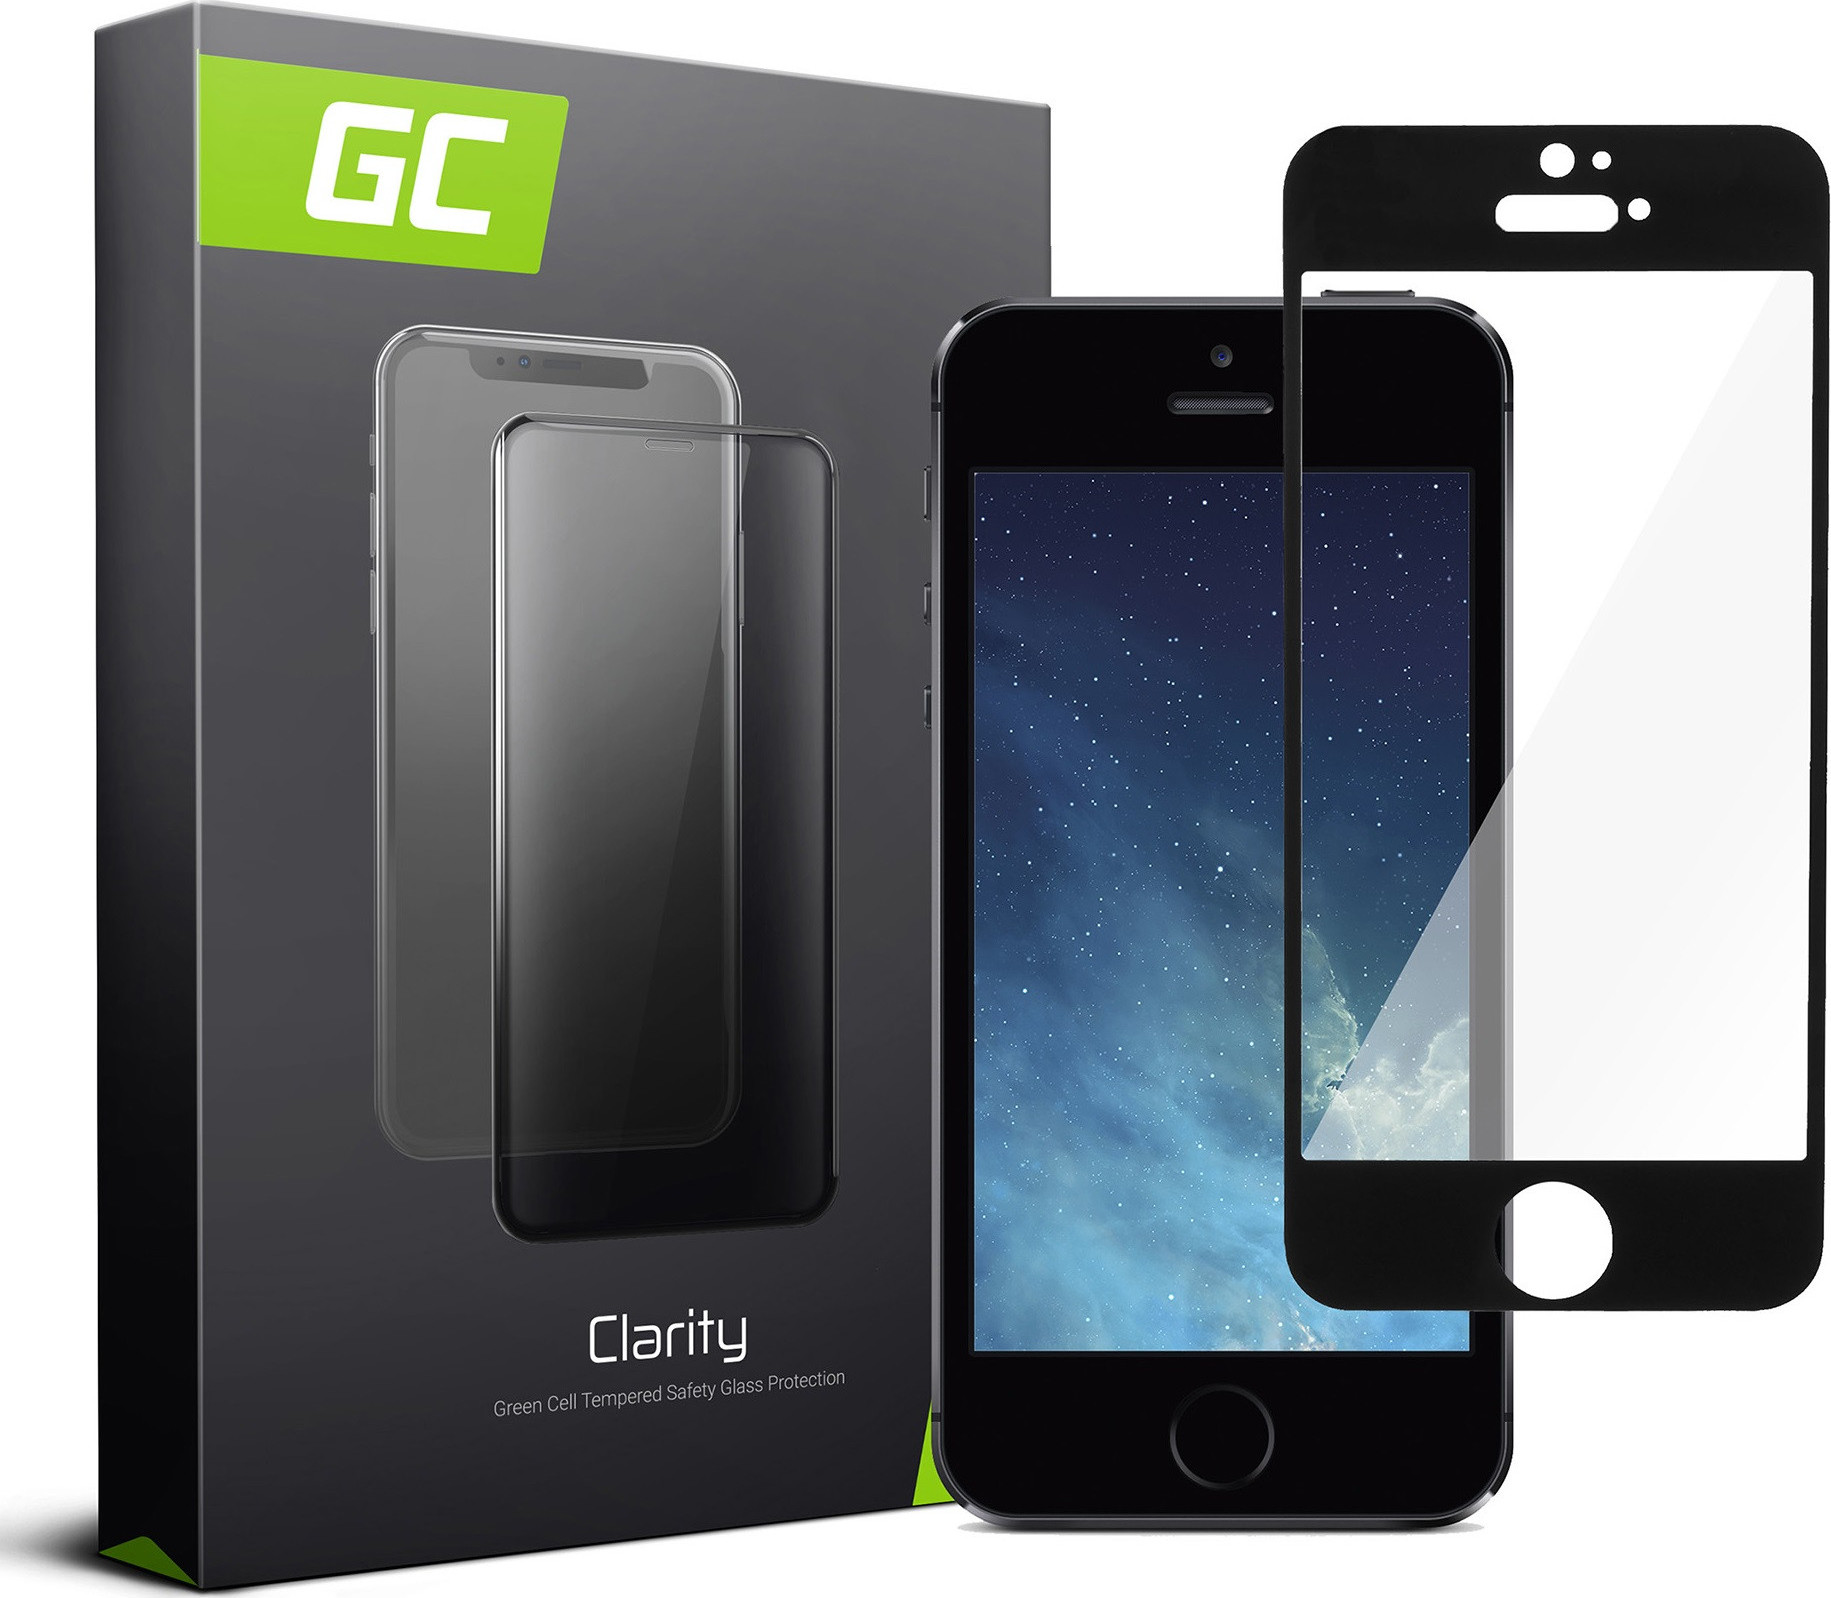 GREEN CELL Ochranná fólia GC Clarity pre Apple iPhone 5/5S/5C/SE